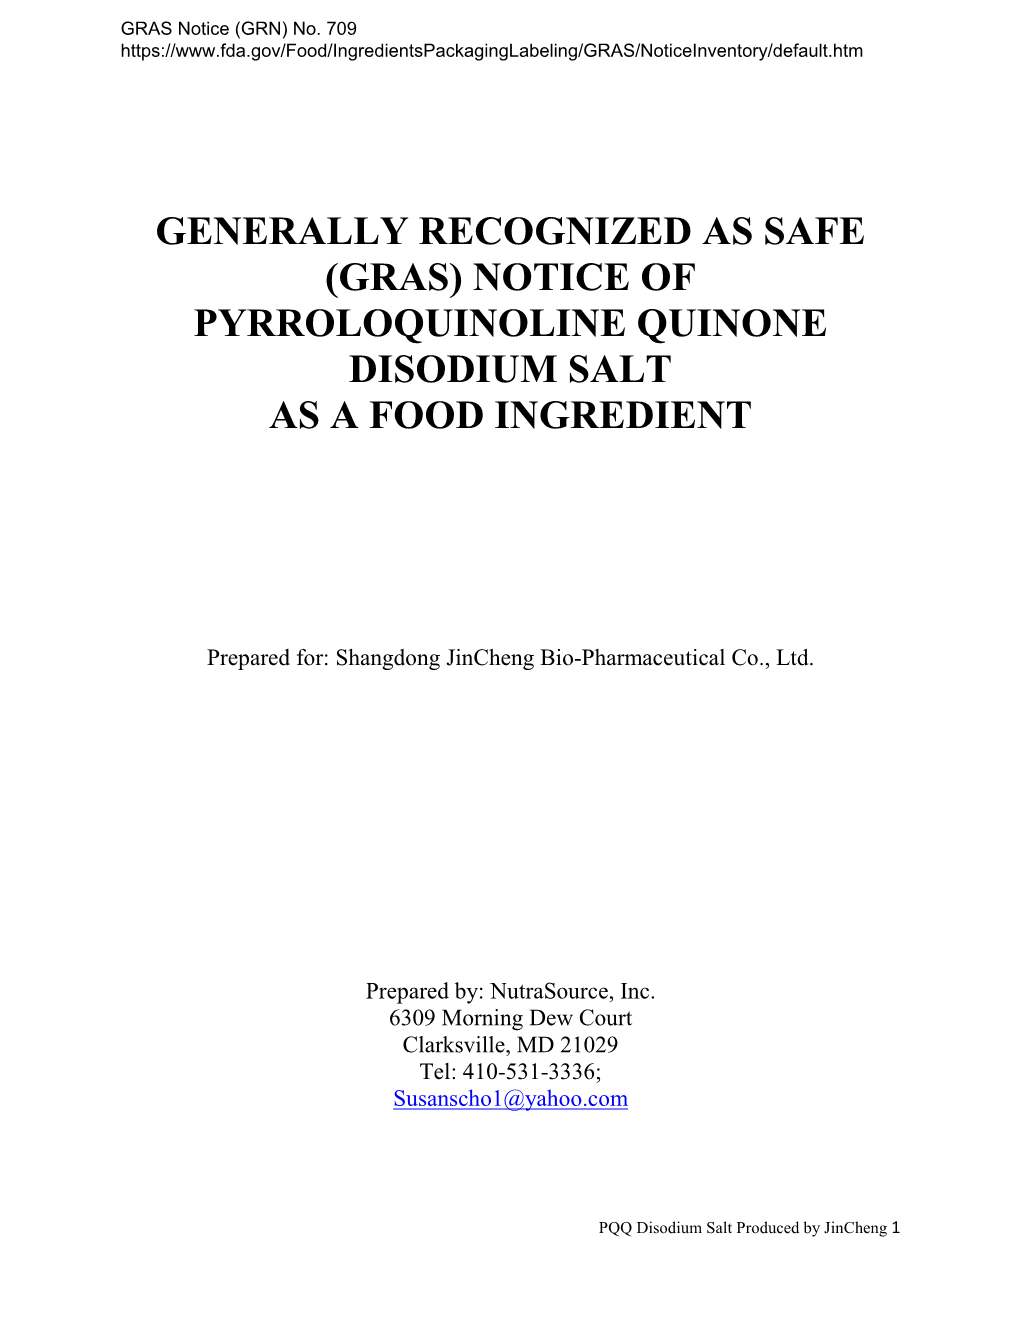 GRAS Notice 709, Pyrroloquinoline Quinone Disodium Salt